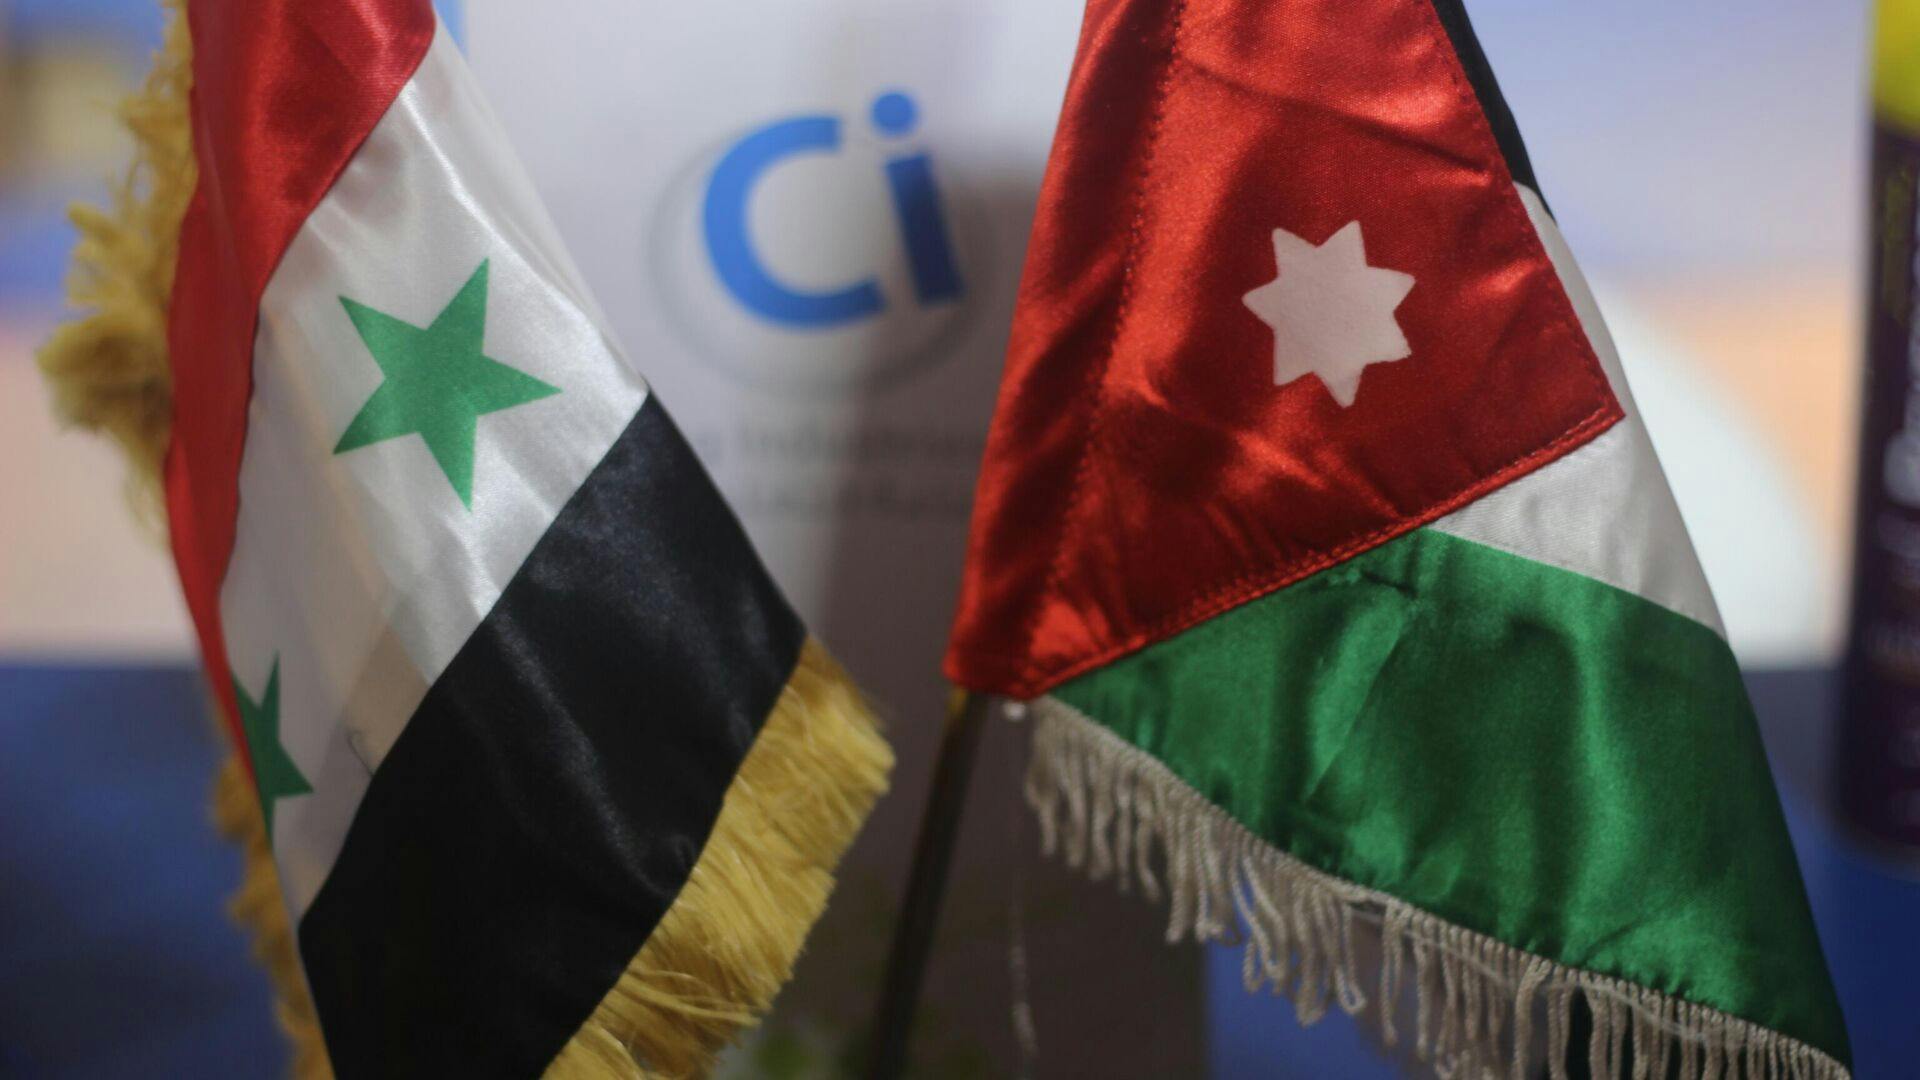 دمشق تبلغ عمان بتمديد إعفاءات اتفاقية التجارة العربية لعام إضافي